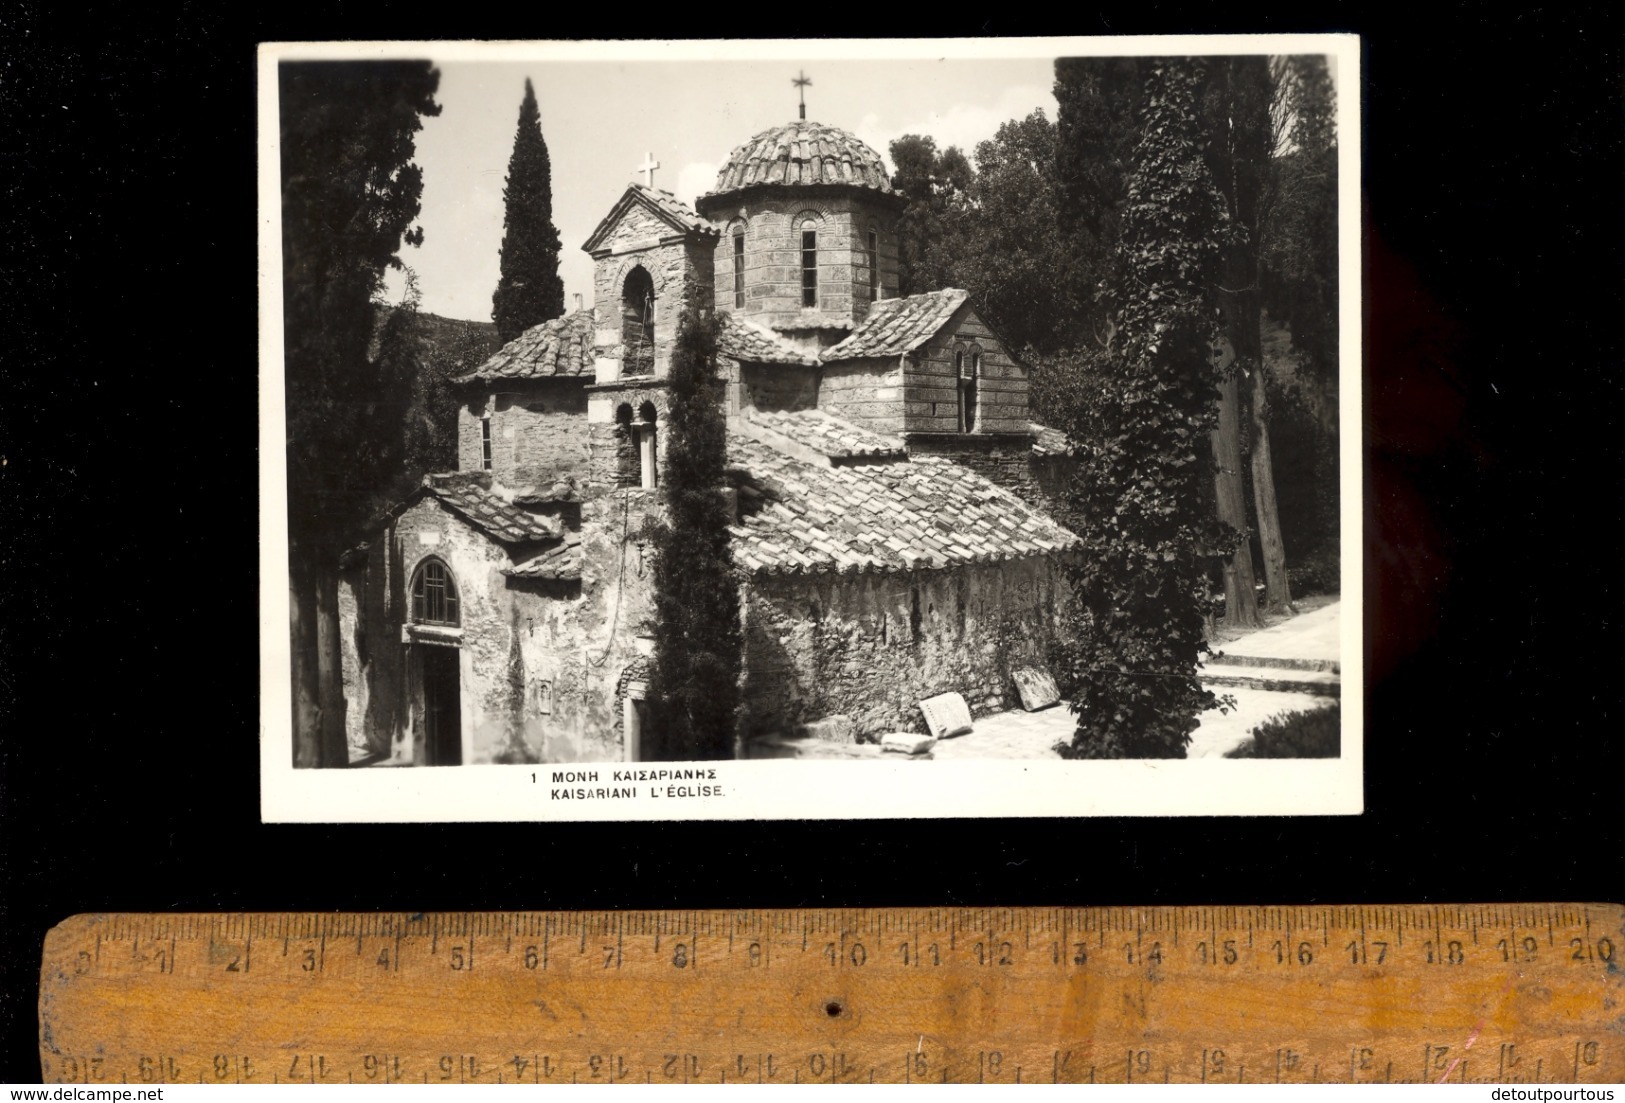 KAISARIANI Greece : X2 Cards :  Vue Générale + L'église  Church - Greece